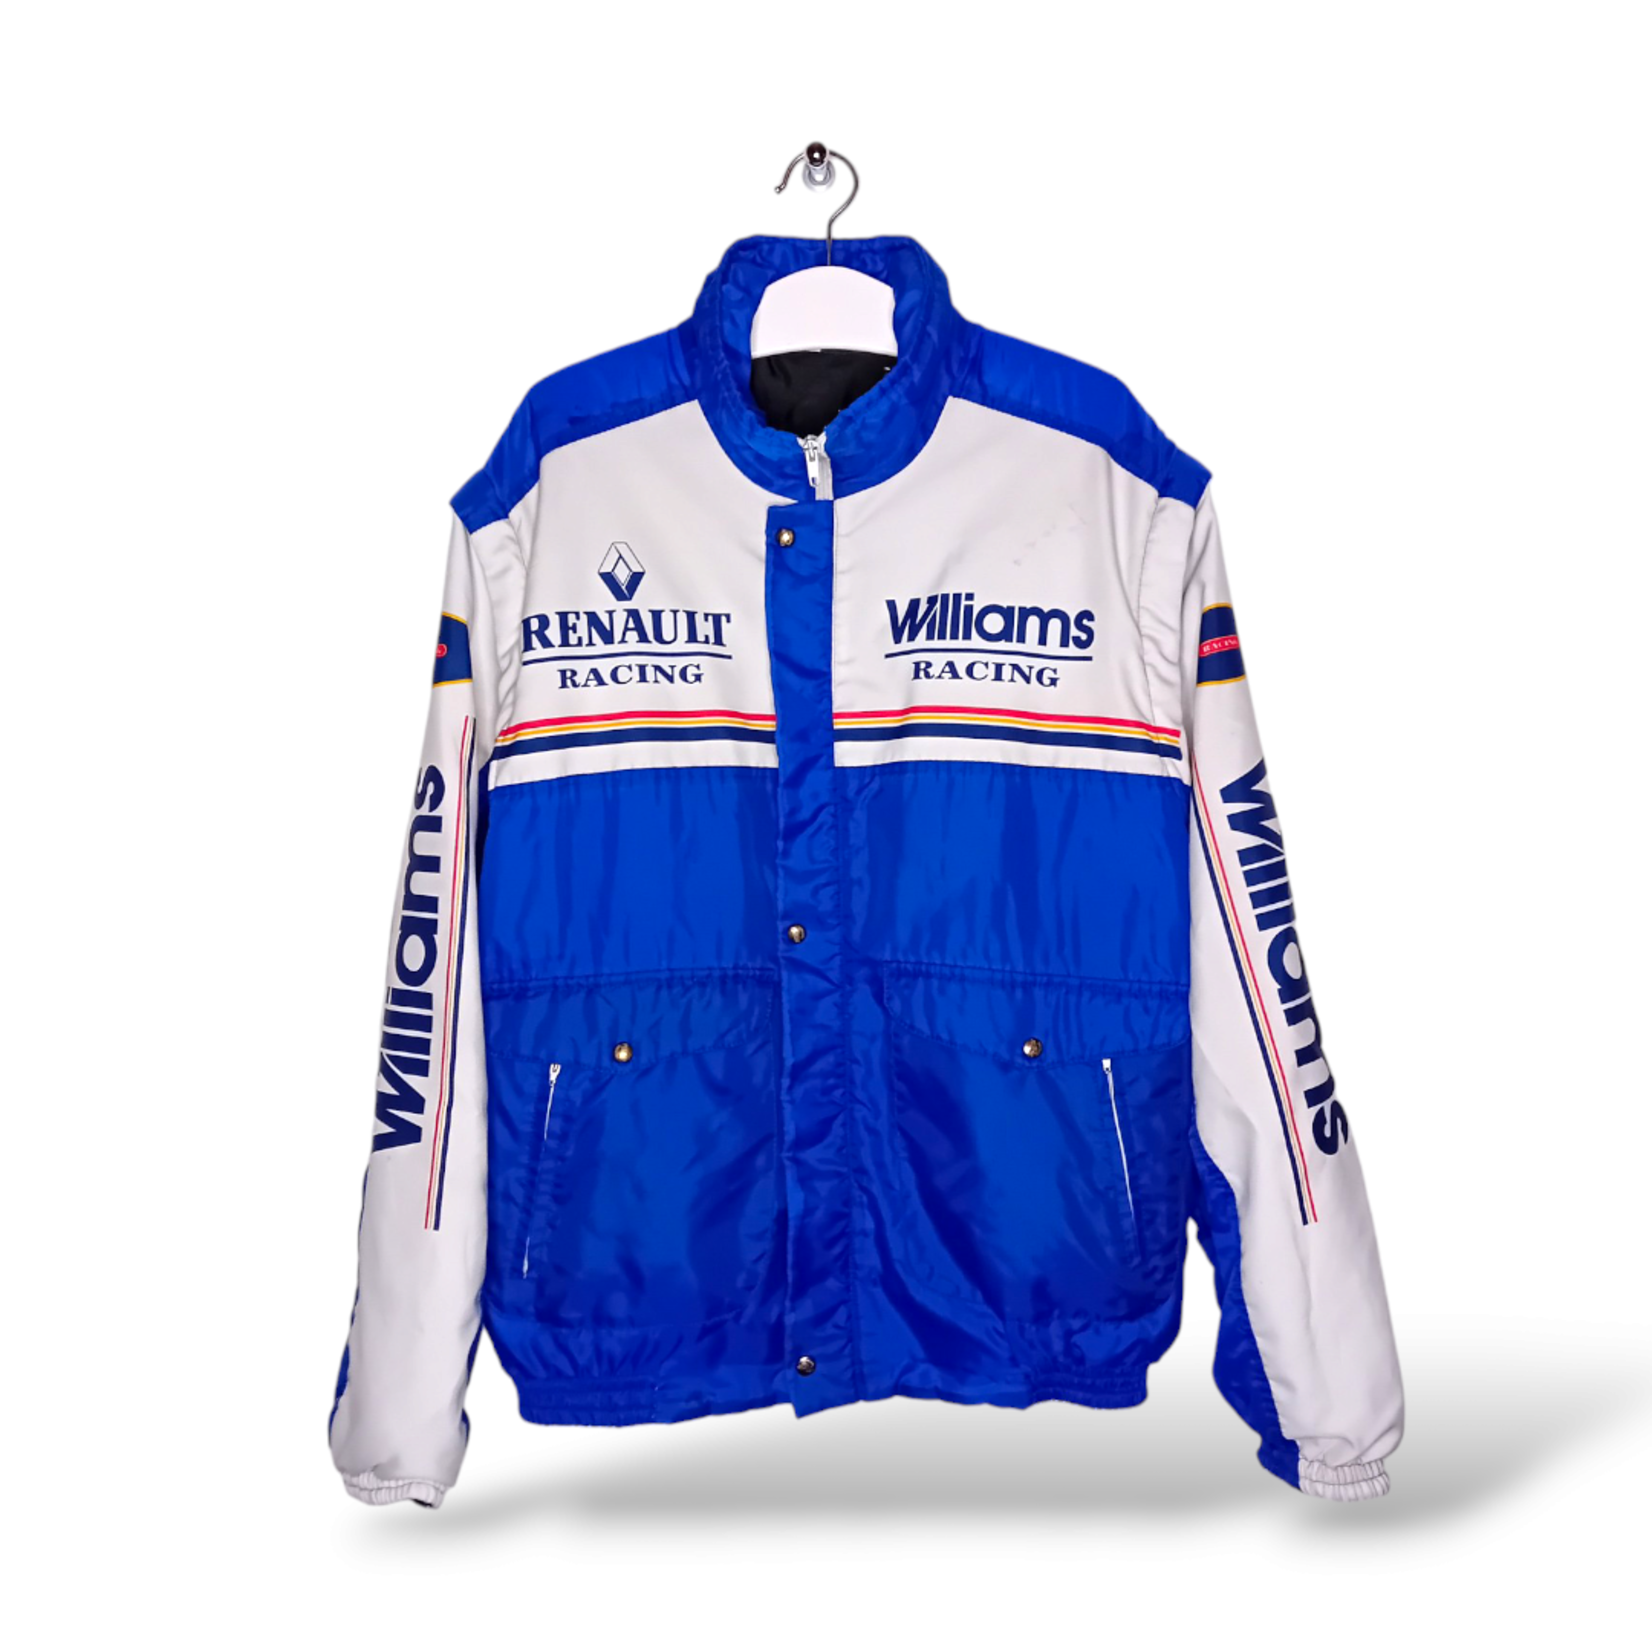 Williams Origineel Williams Renault vintage F1 jacket 90s